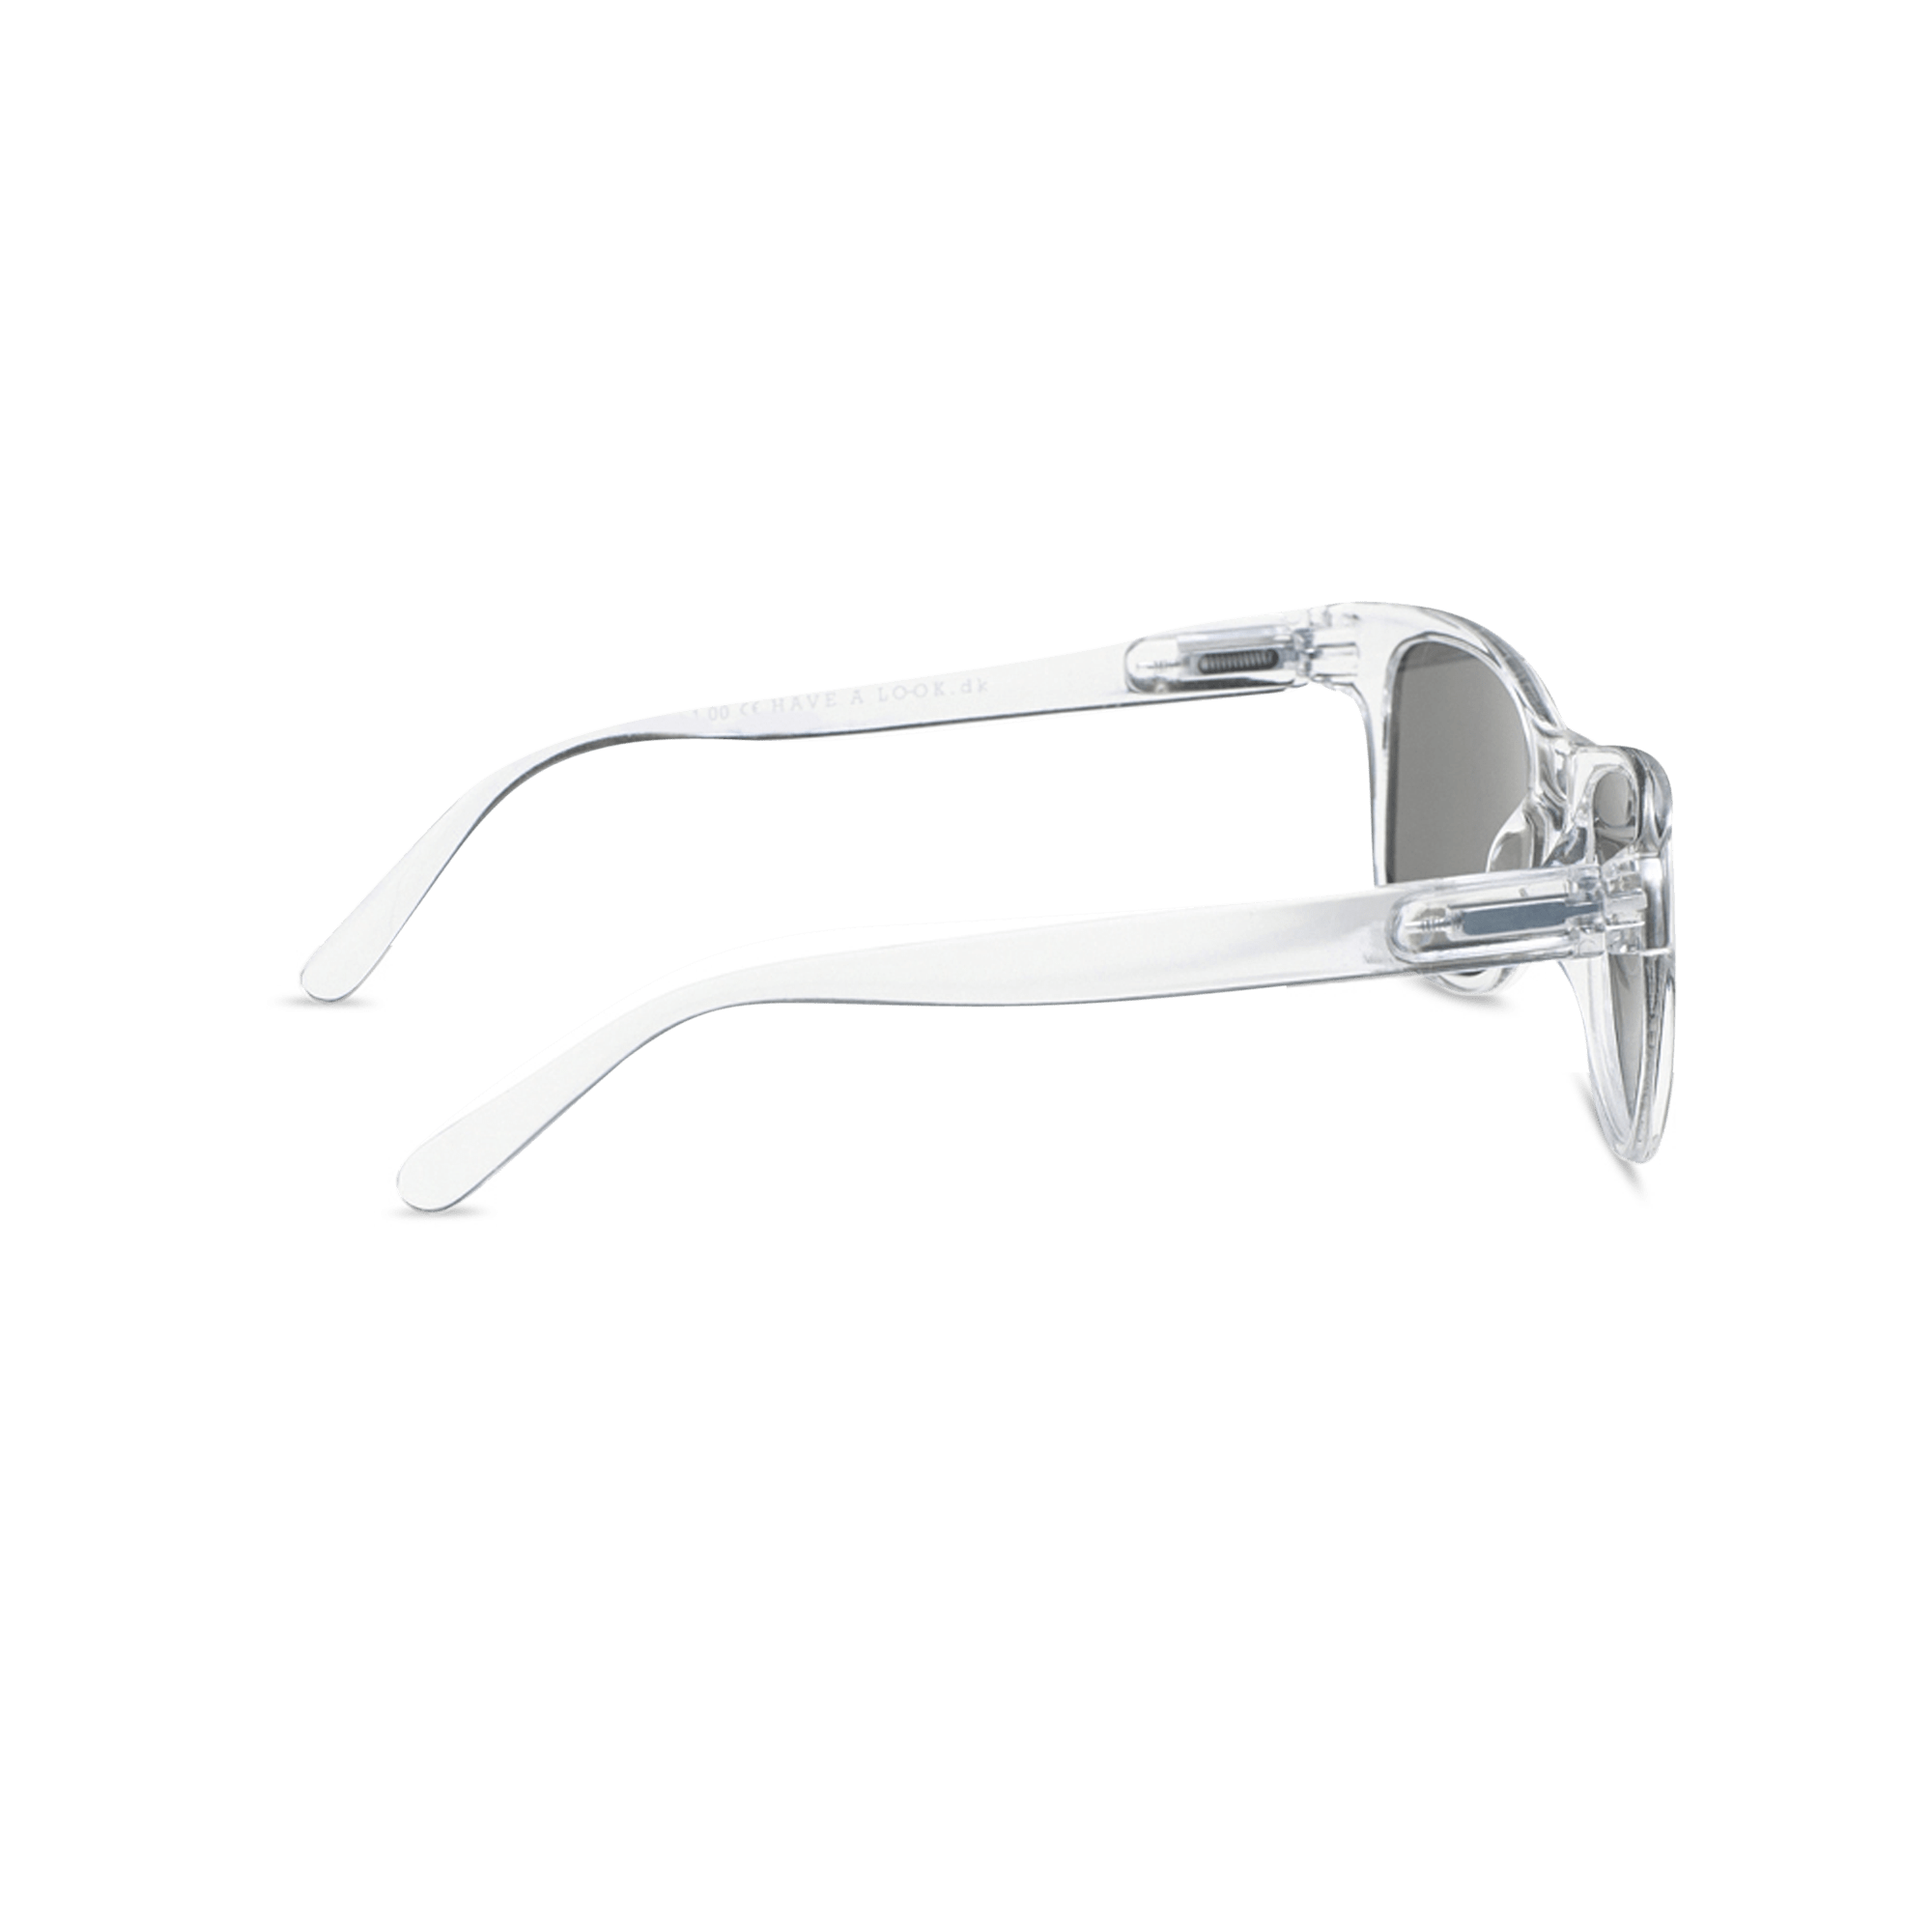 Solbriller Type B - transparent